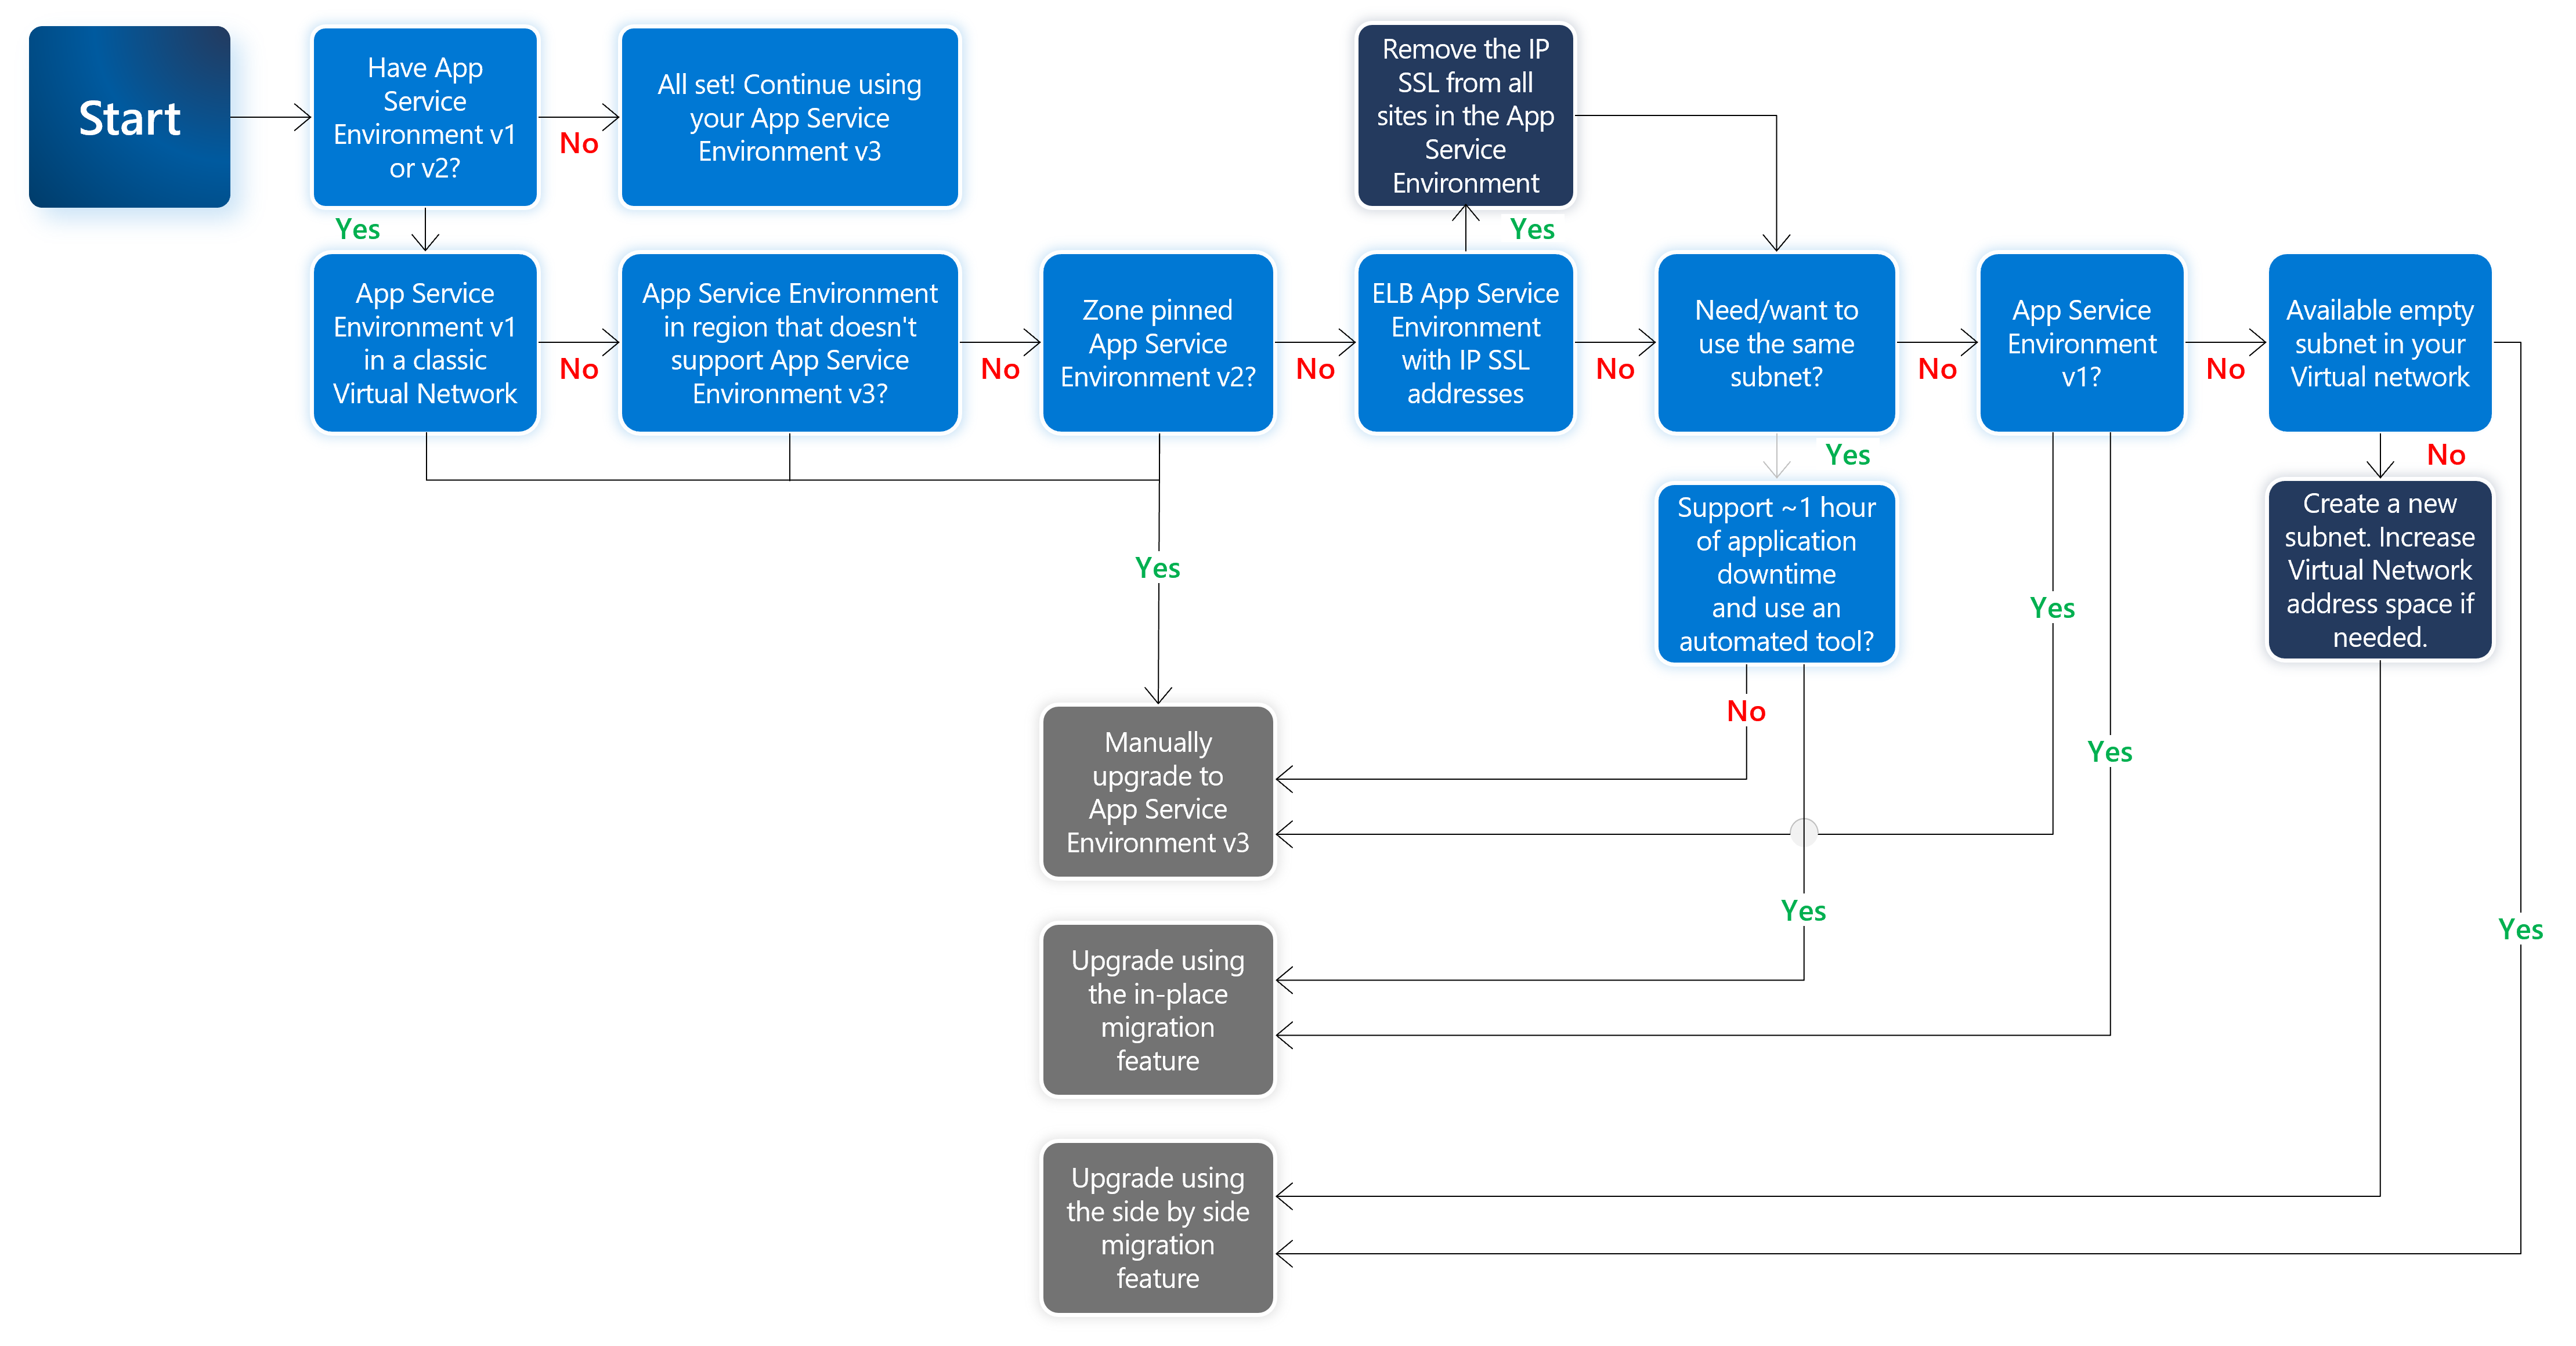 Captura de tela da árvore de decisão para ajudar a decidir qual opção de atualização do Ambiente do Serviço de Aplicativo deve ser usada.